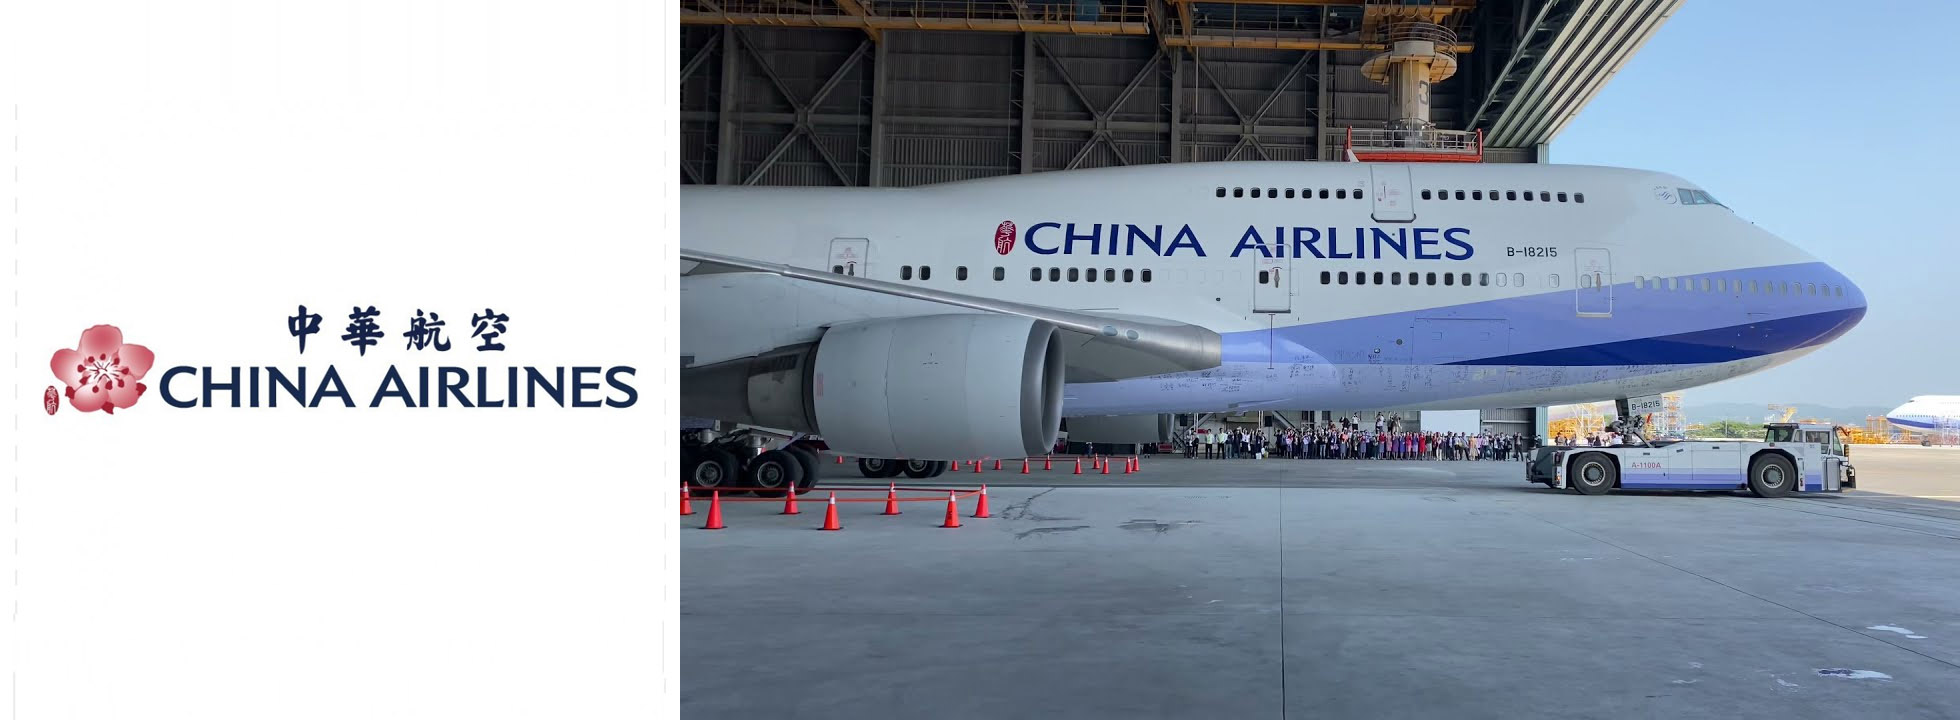 China Airlines JFK airport